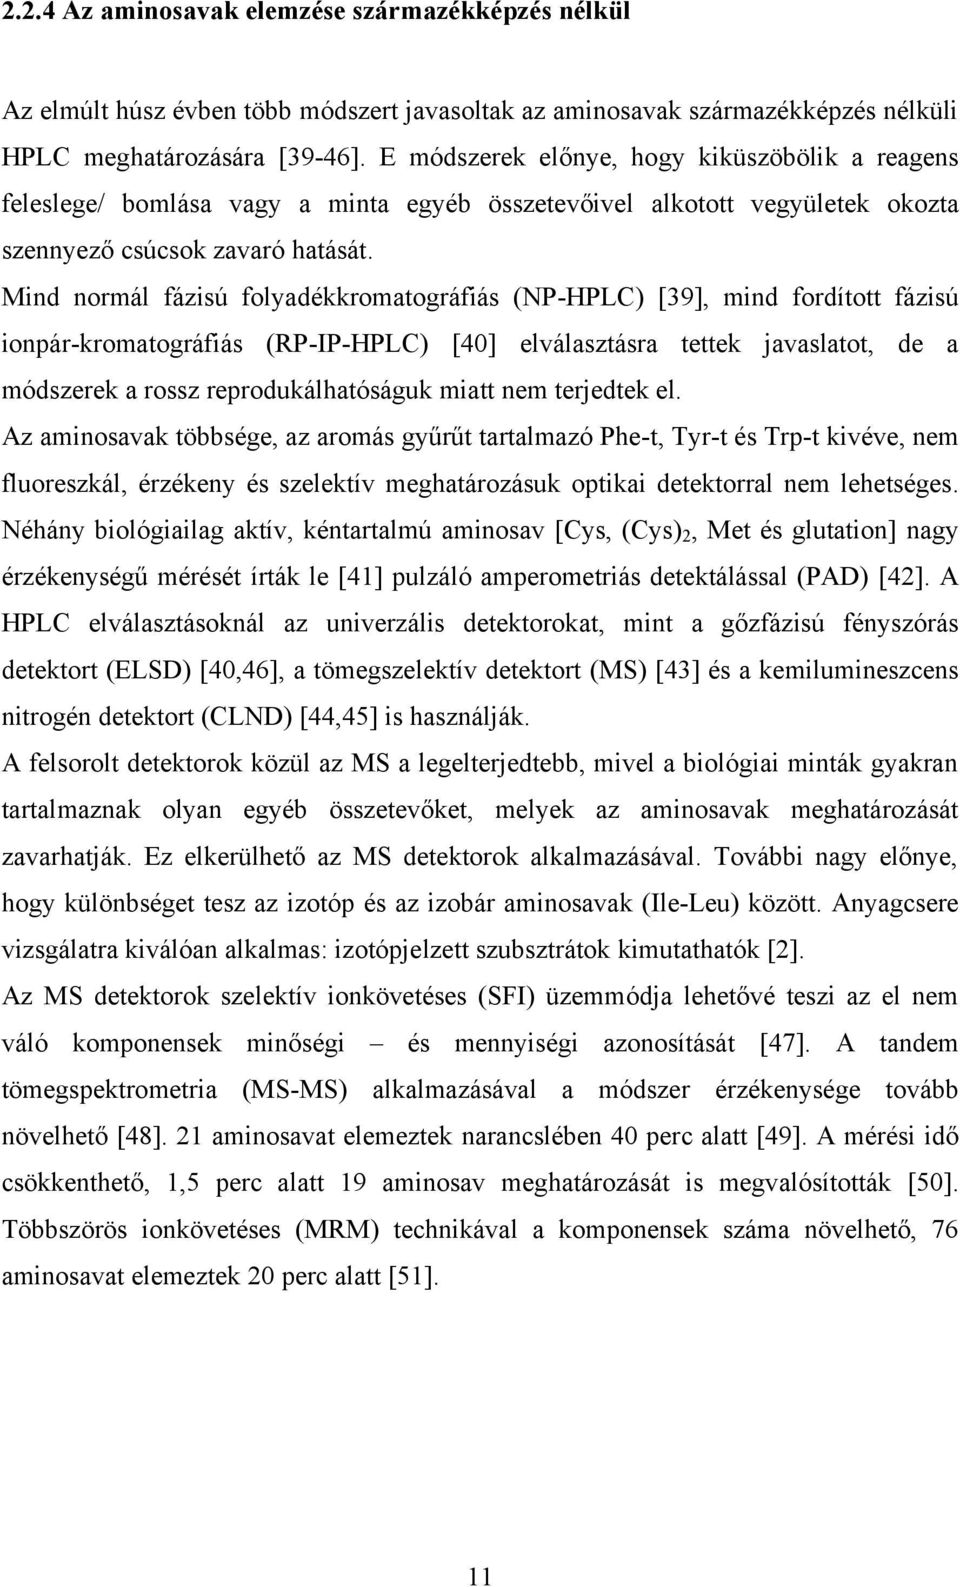 Mind normál fázisú folyadékkromatográfiás (NP-HPLC) [39], mind fordított fázisú ionpár-kromatográfiás (RP-IP-HPLC) [40] elválasztásra tettek javaslatot, de a módszerek a rossz reprodukálhatóságuk